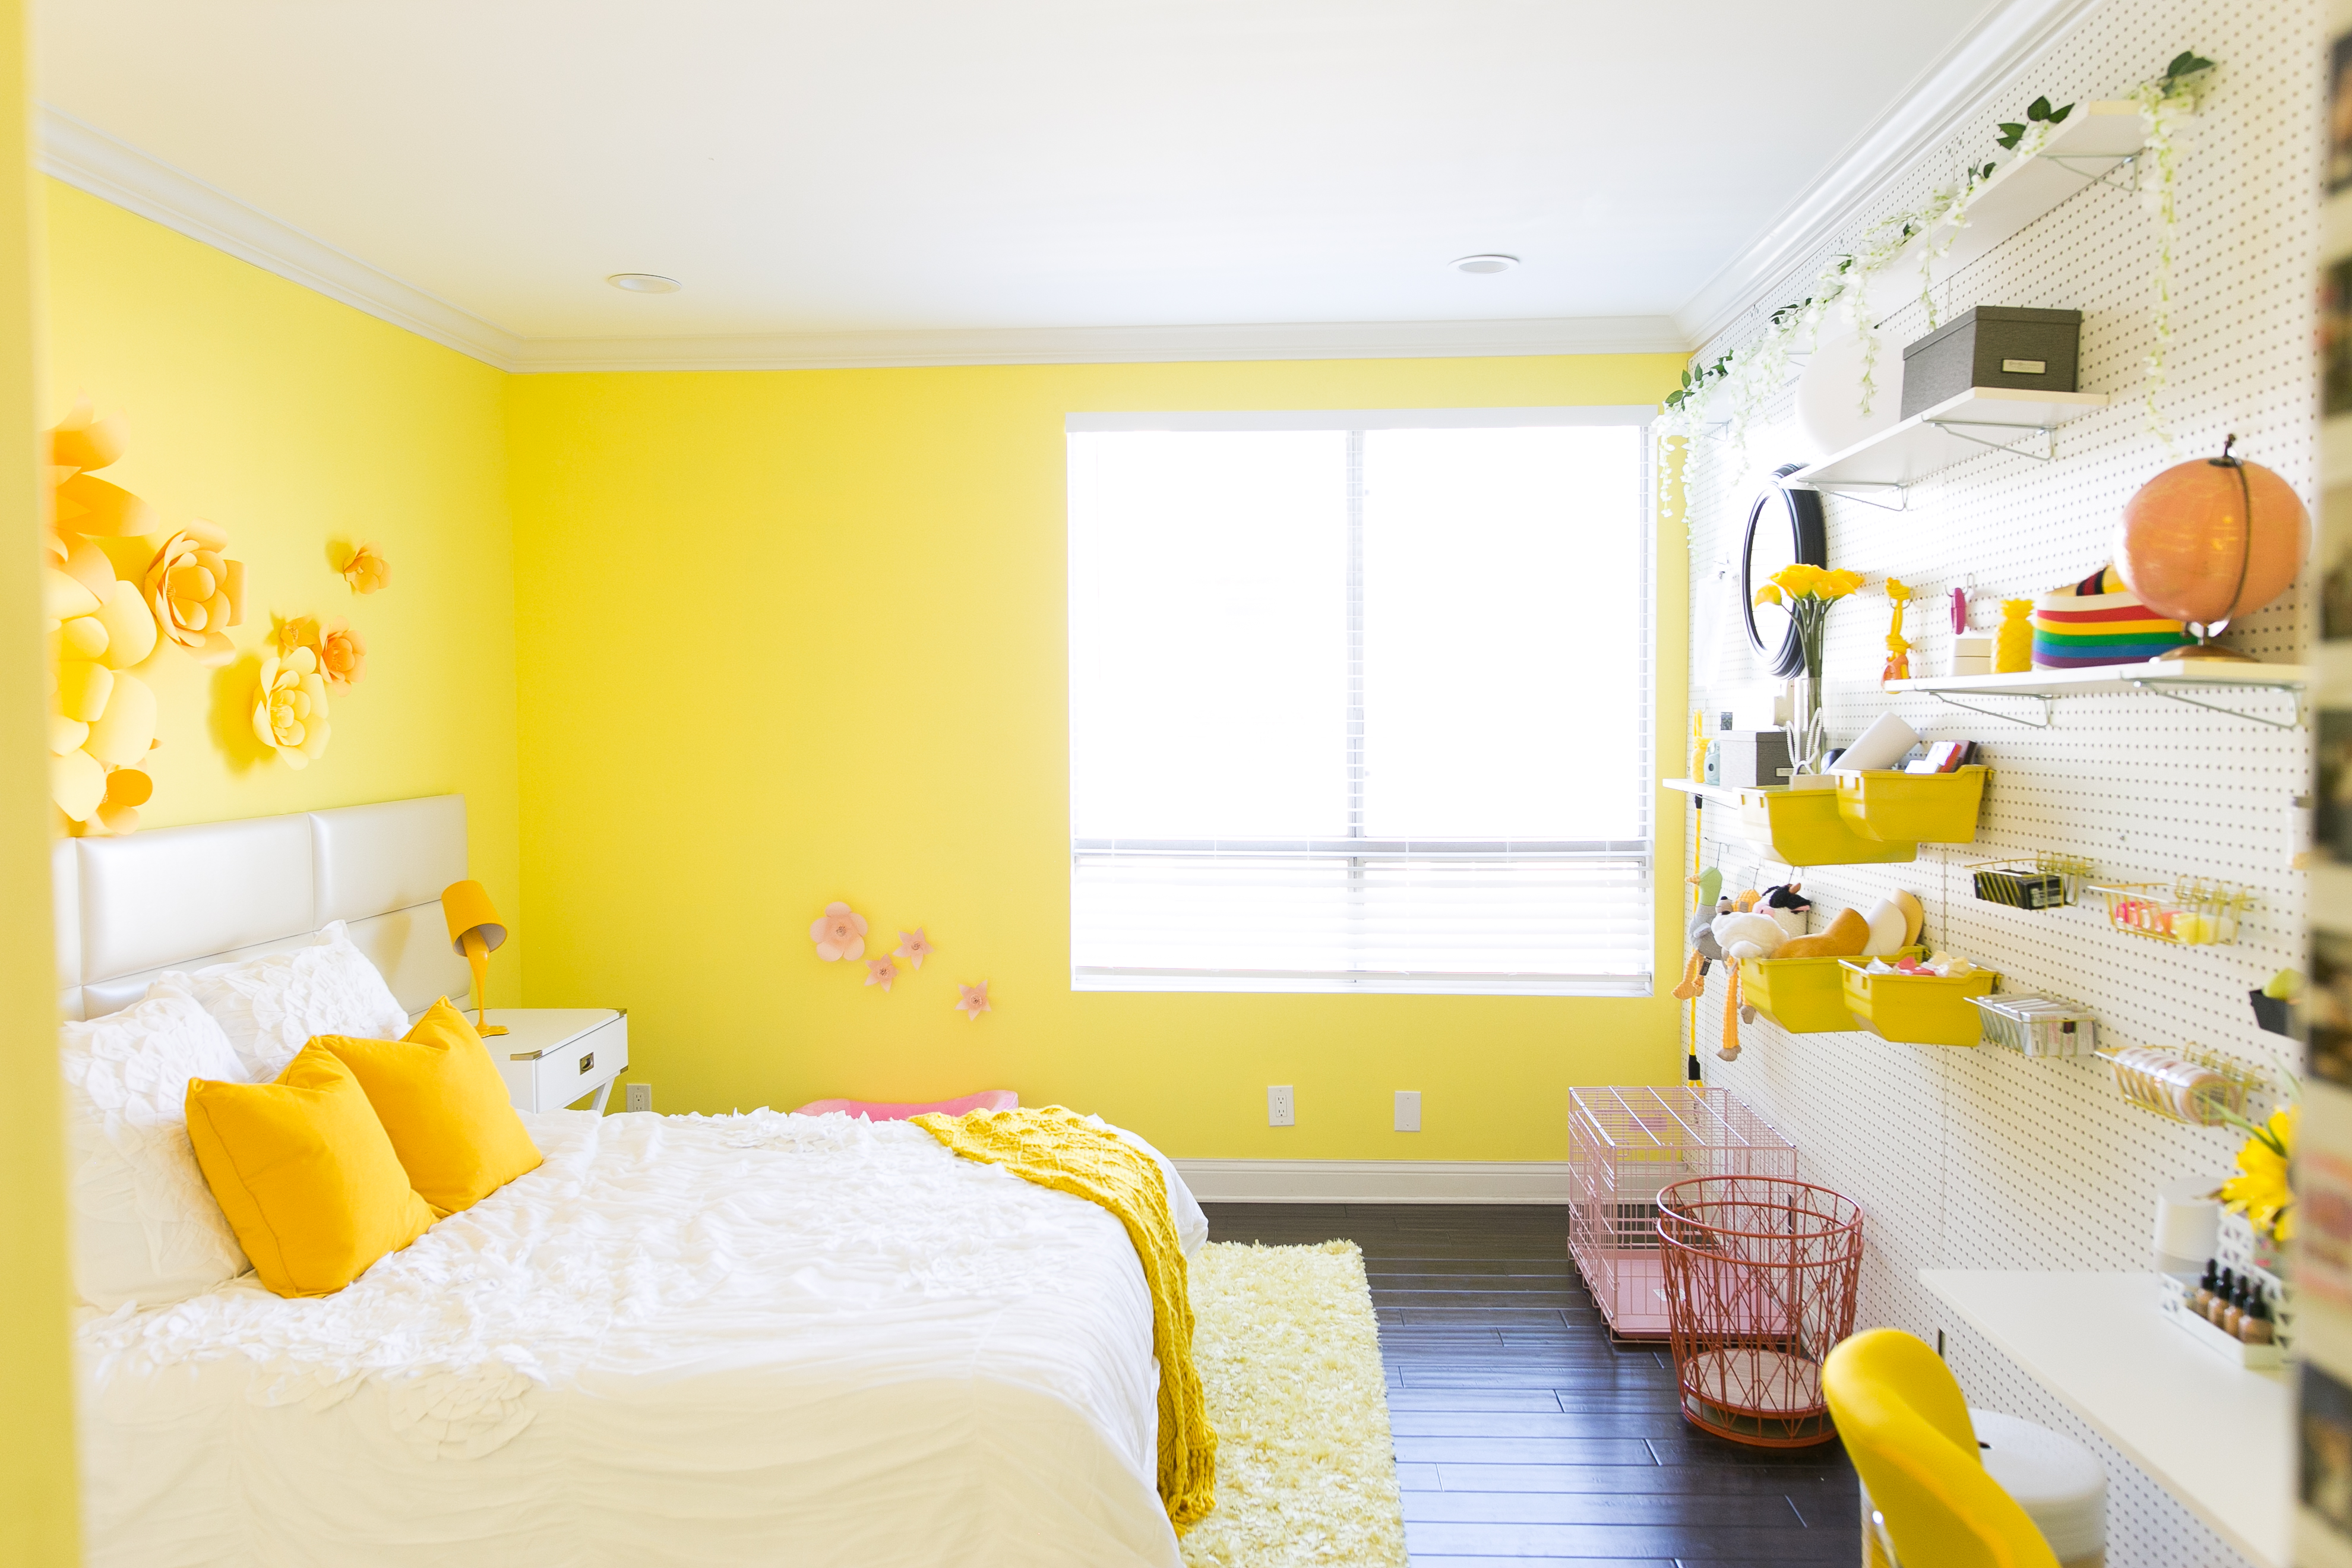 обои лимонного цвета в интерьере спальни